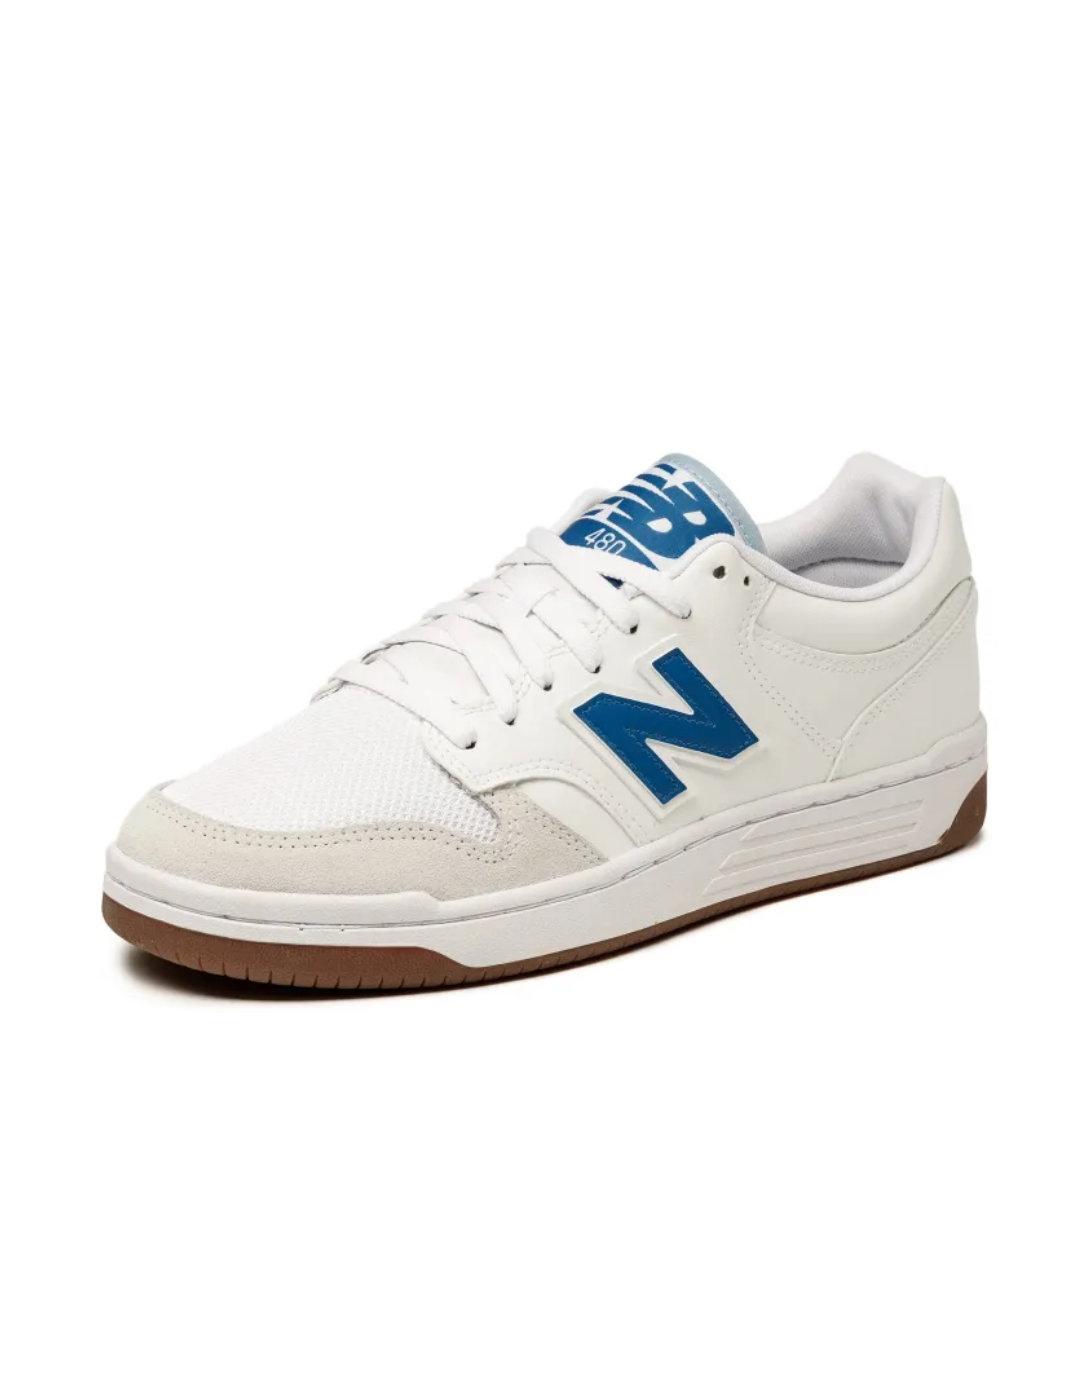 Zapatillas New Balance 480 blanca y azul para hombre